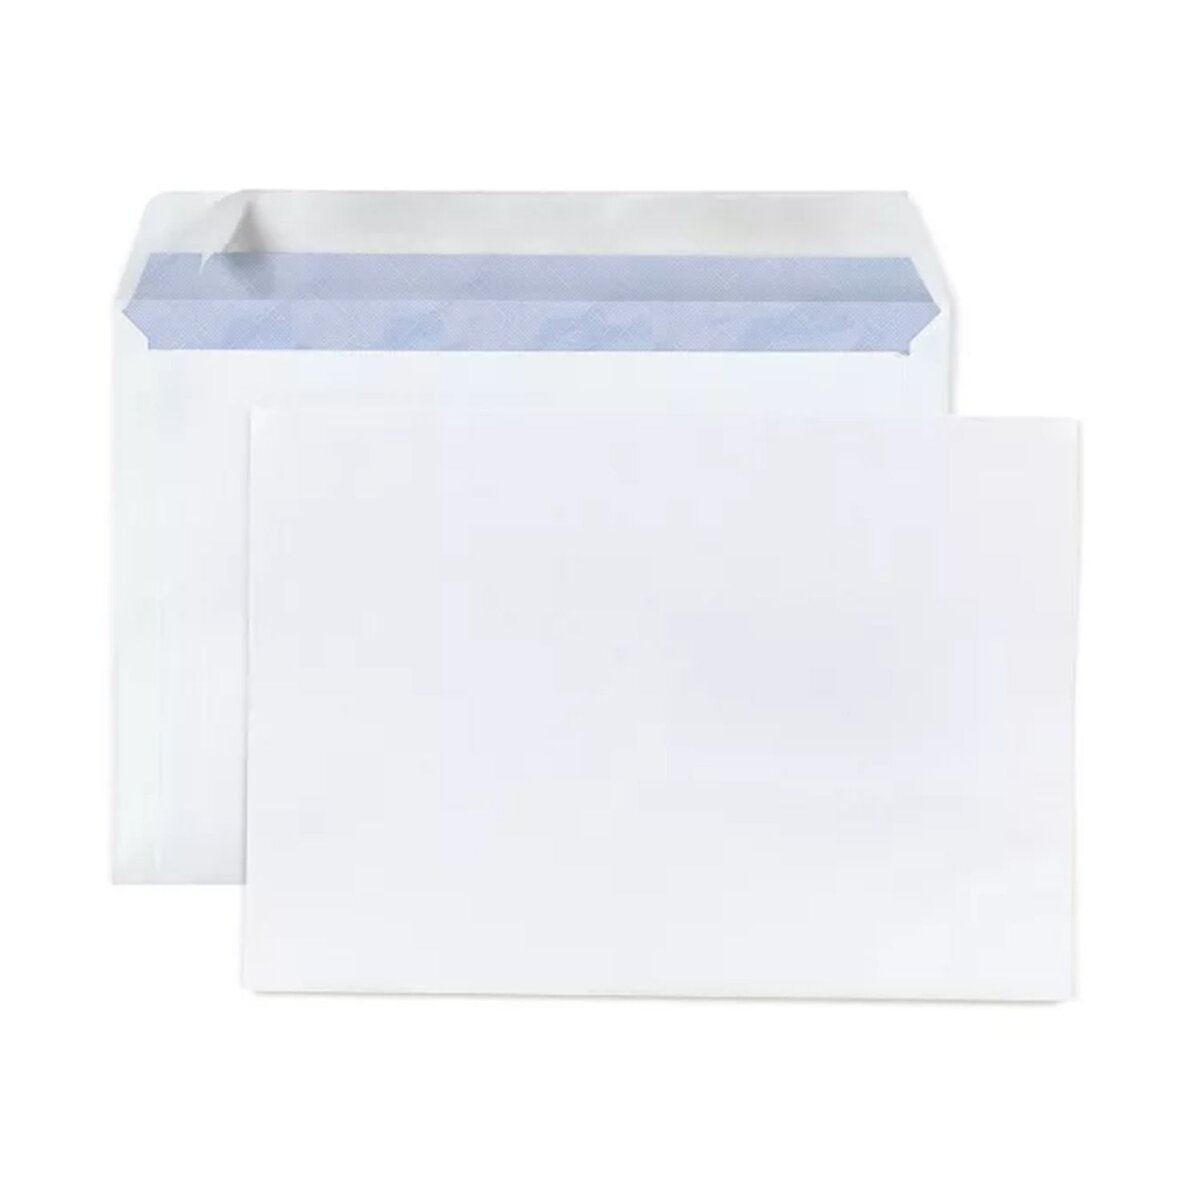 50 enveloppes carrées 16x16 cm en blanc, autocollantes, 100 g/qm